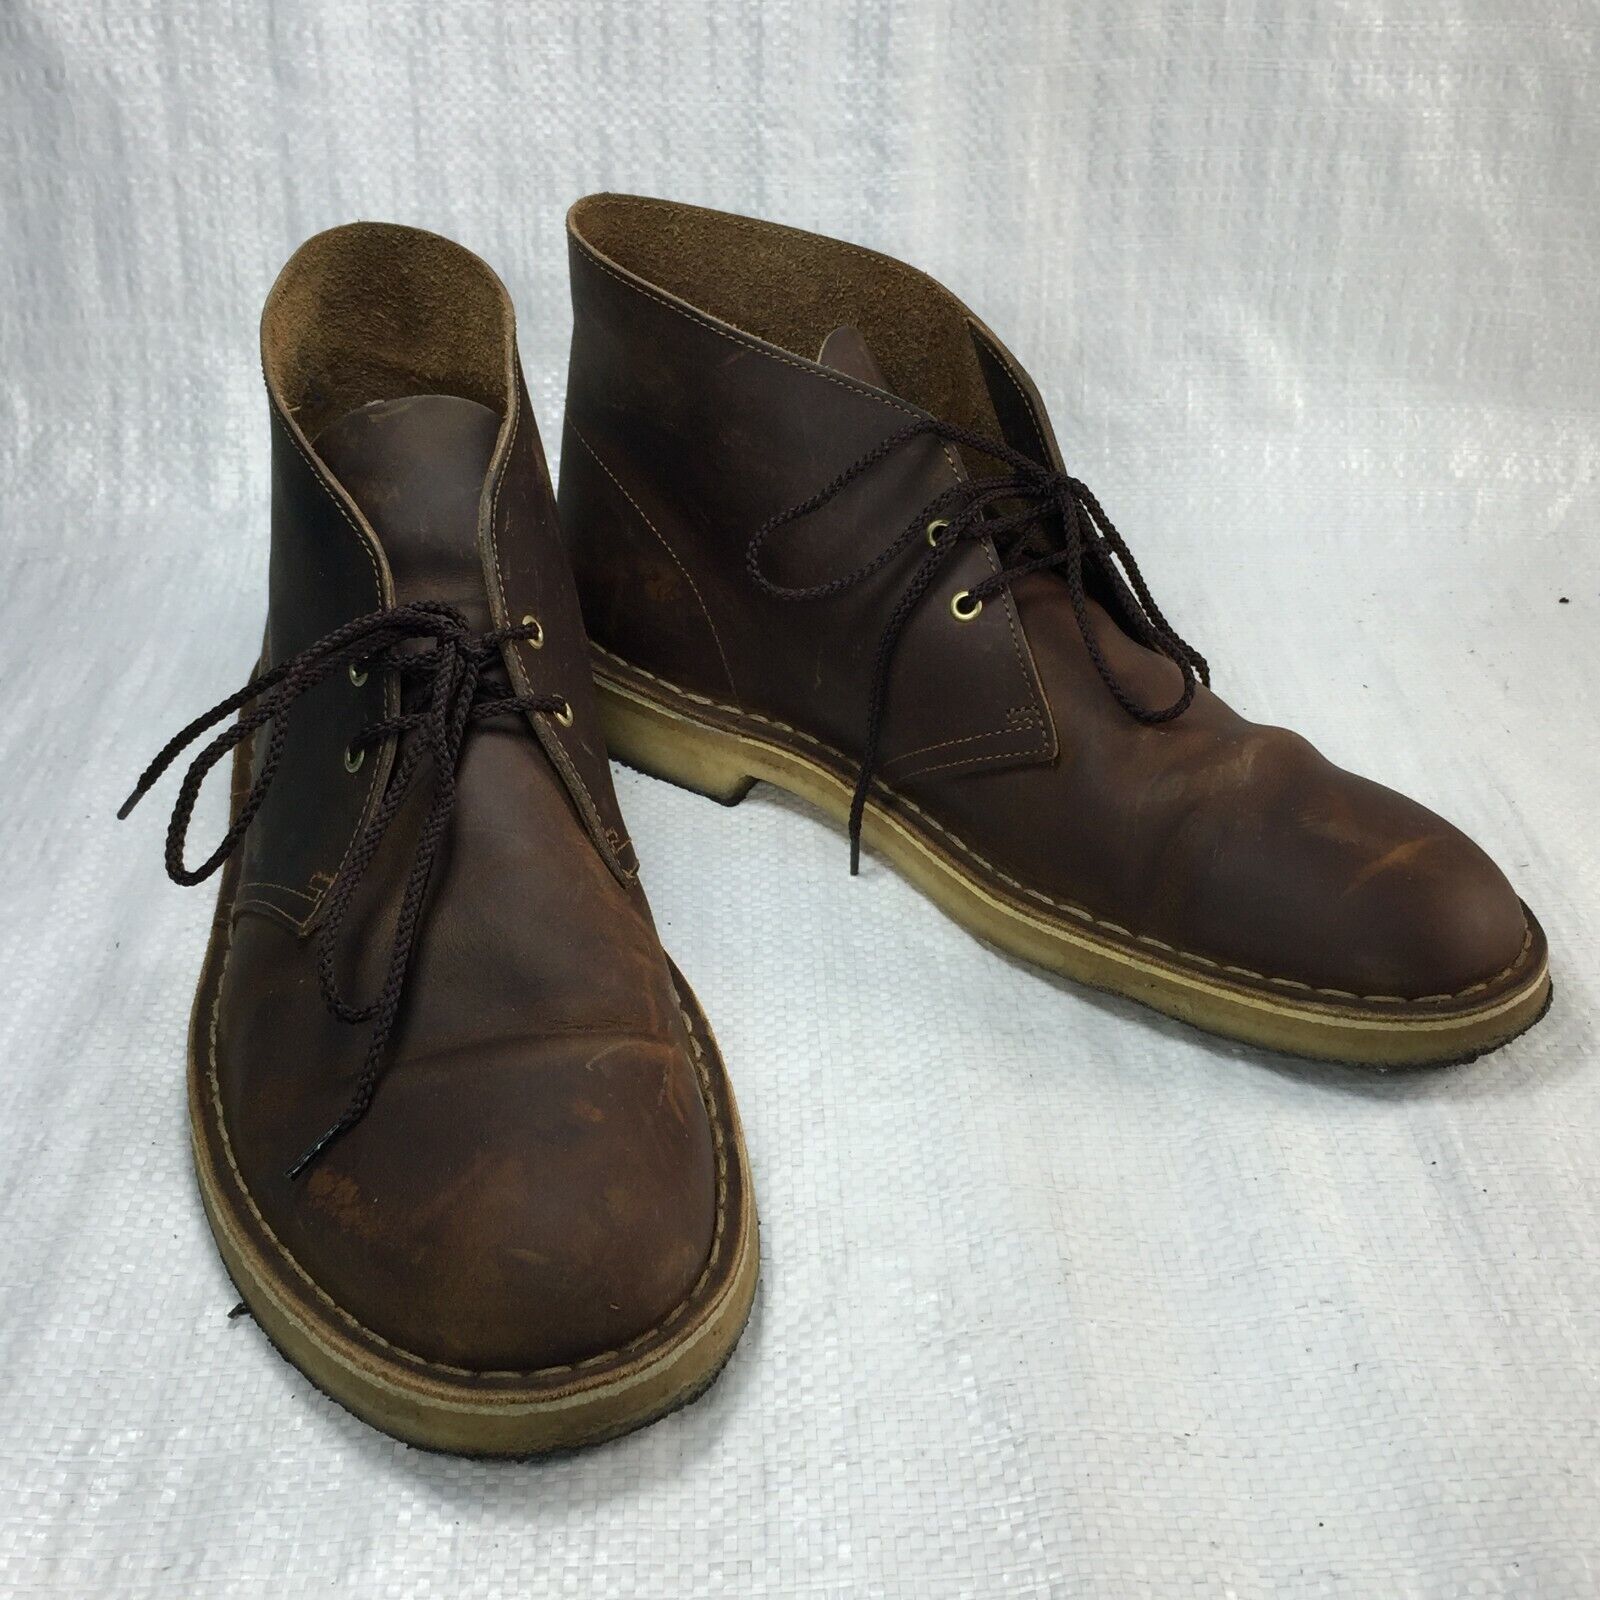 clarks originals desert boot mens chukkas beeswax leather